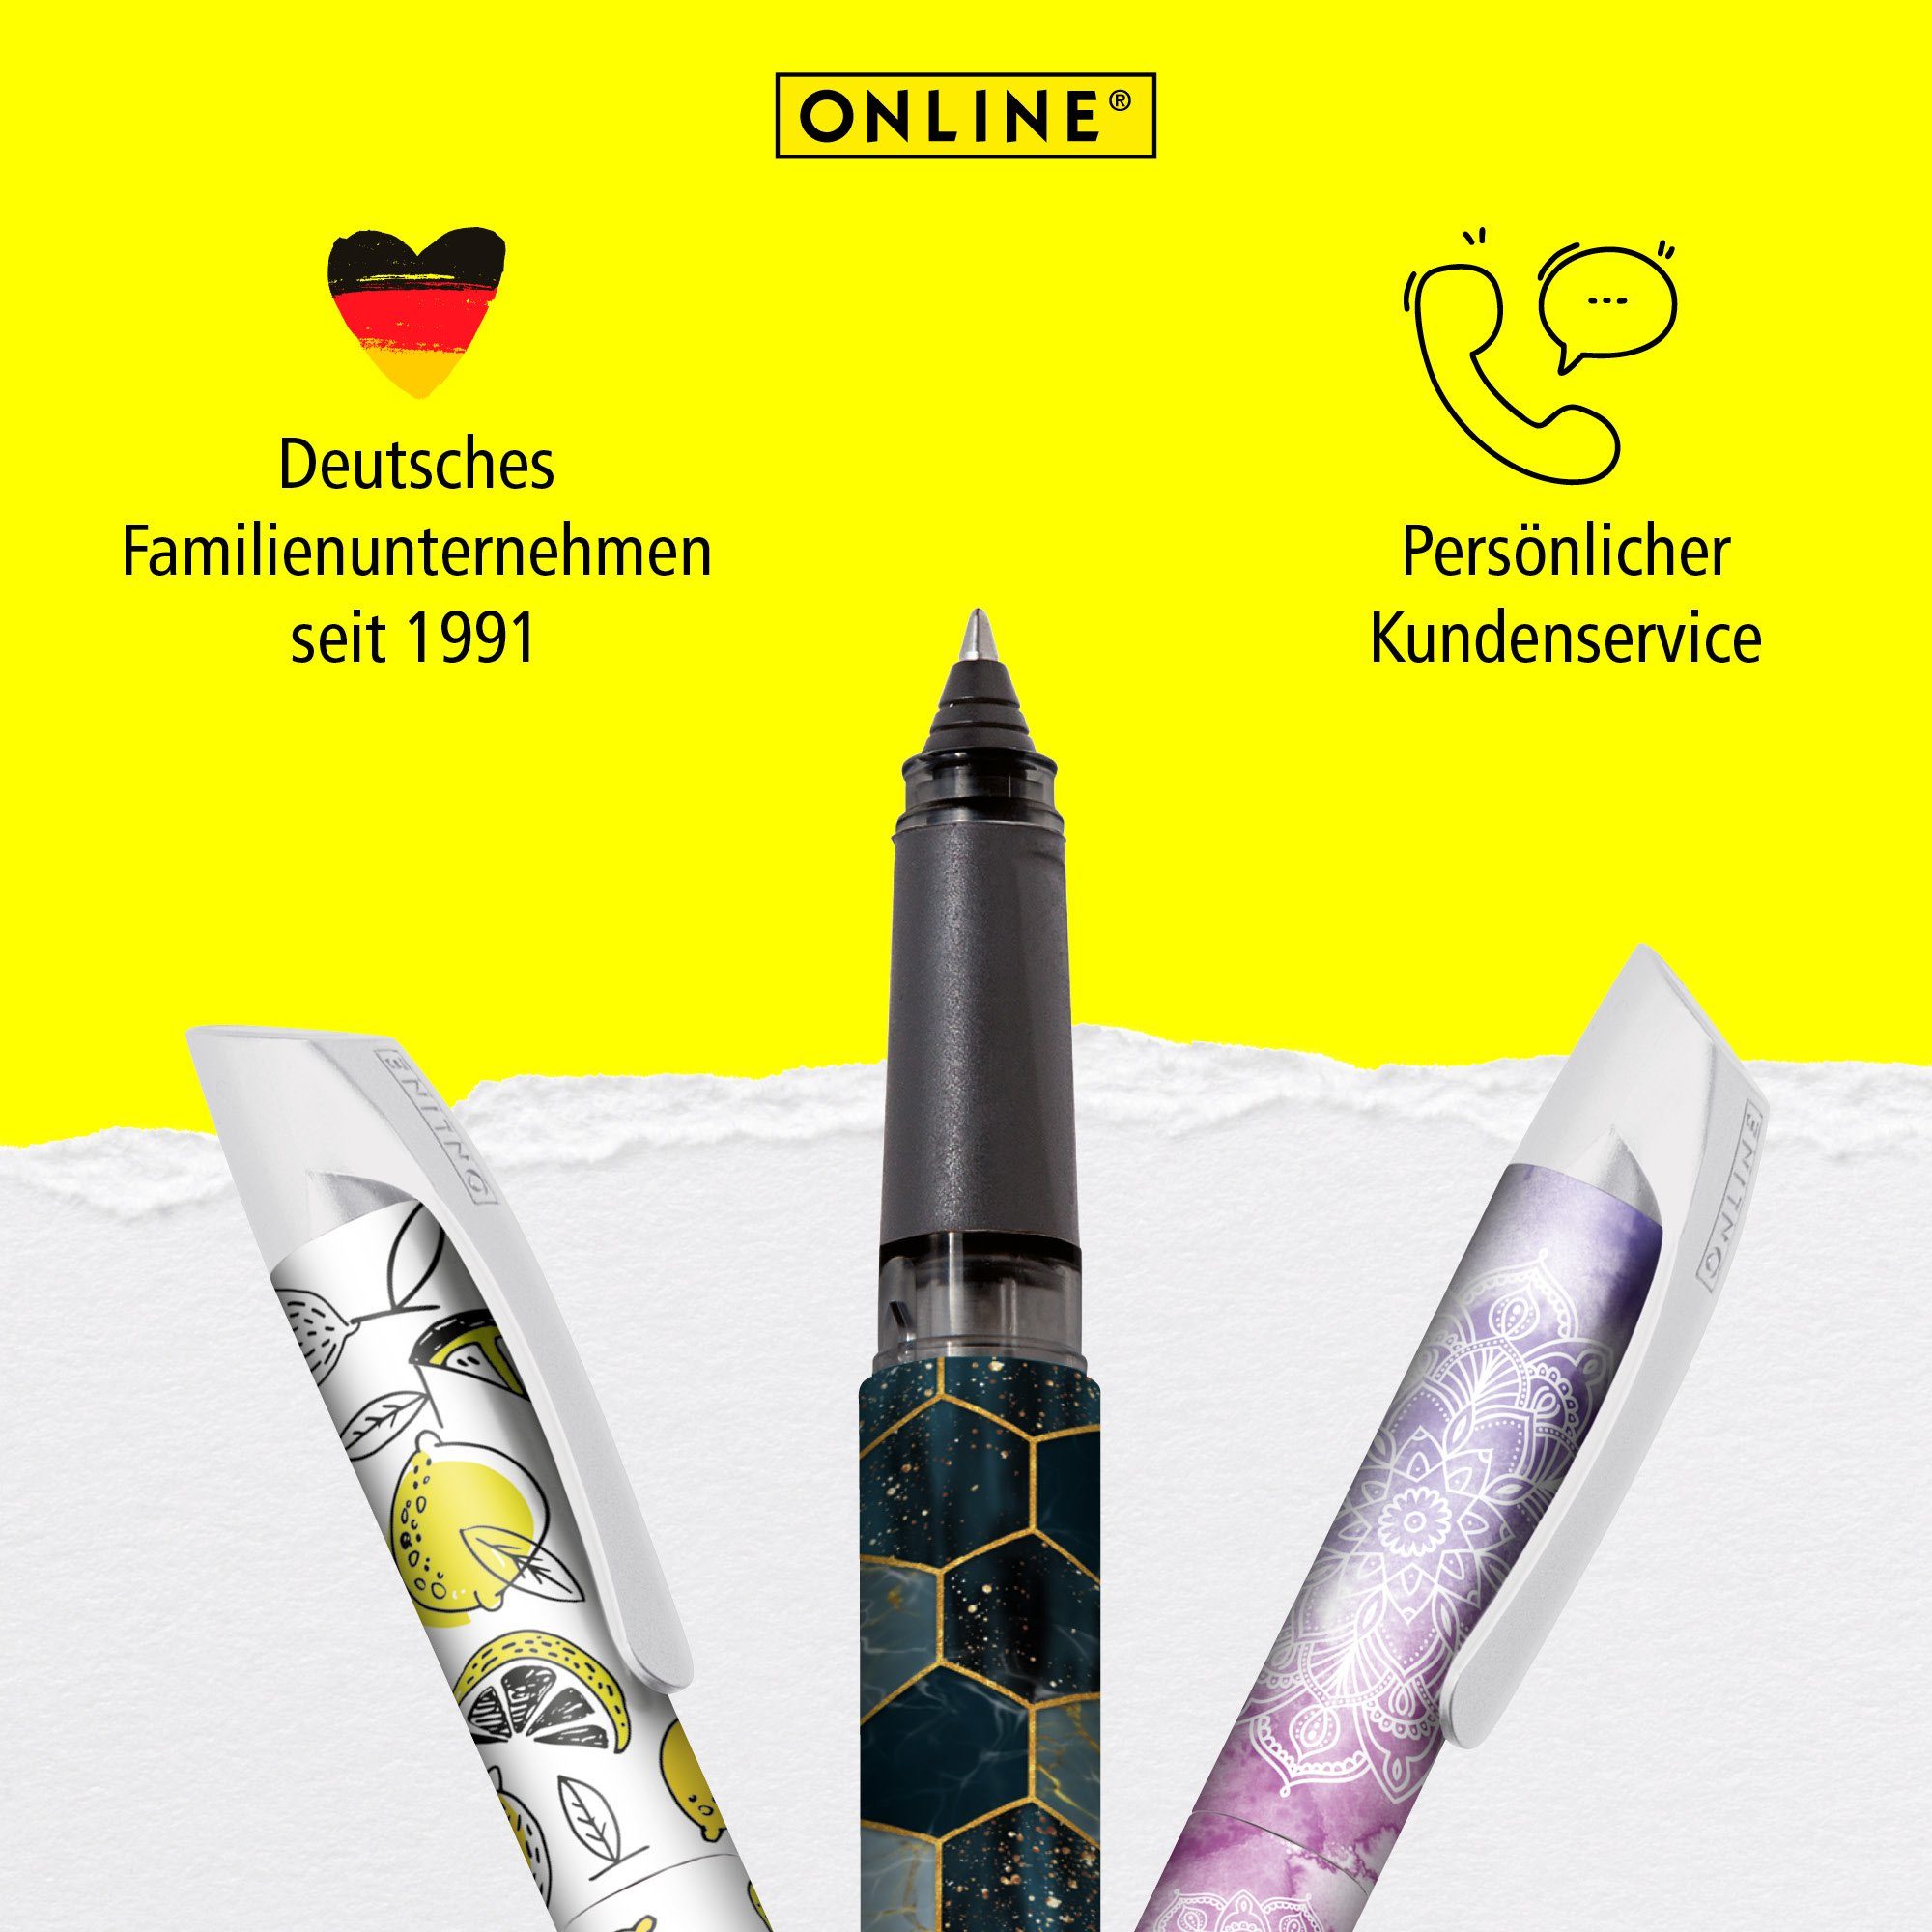 ideal Tintenpatronen-Rollerball, in Online Deutschland für hergestellt Lemon Schule, ergonomisch, Pen die Tintenroller Campus